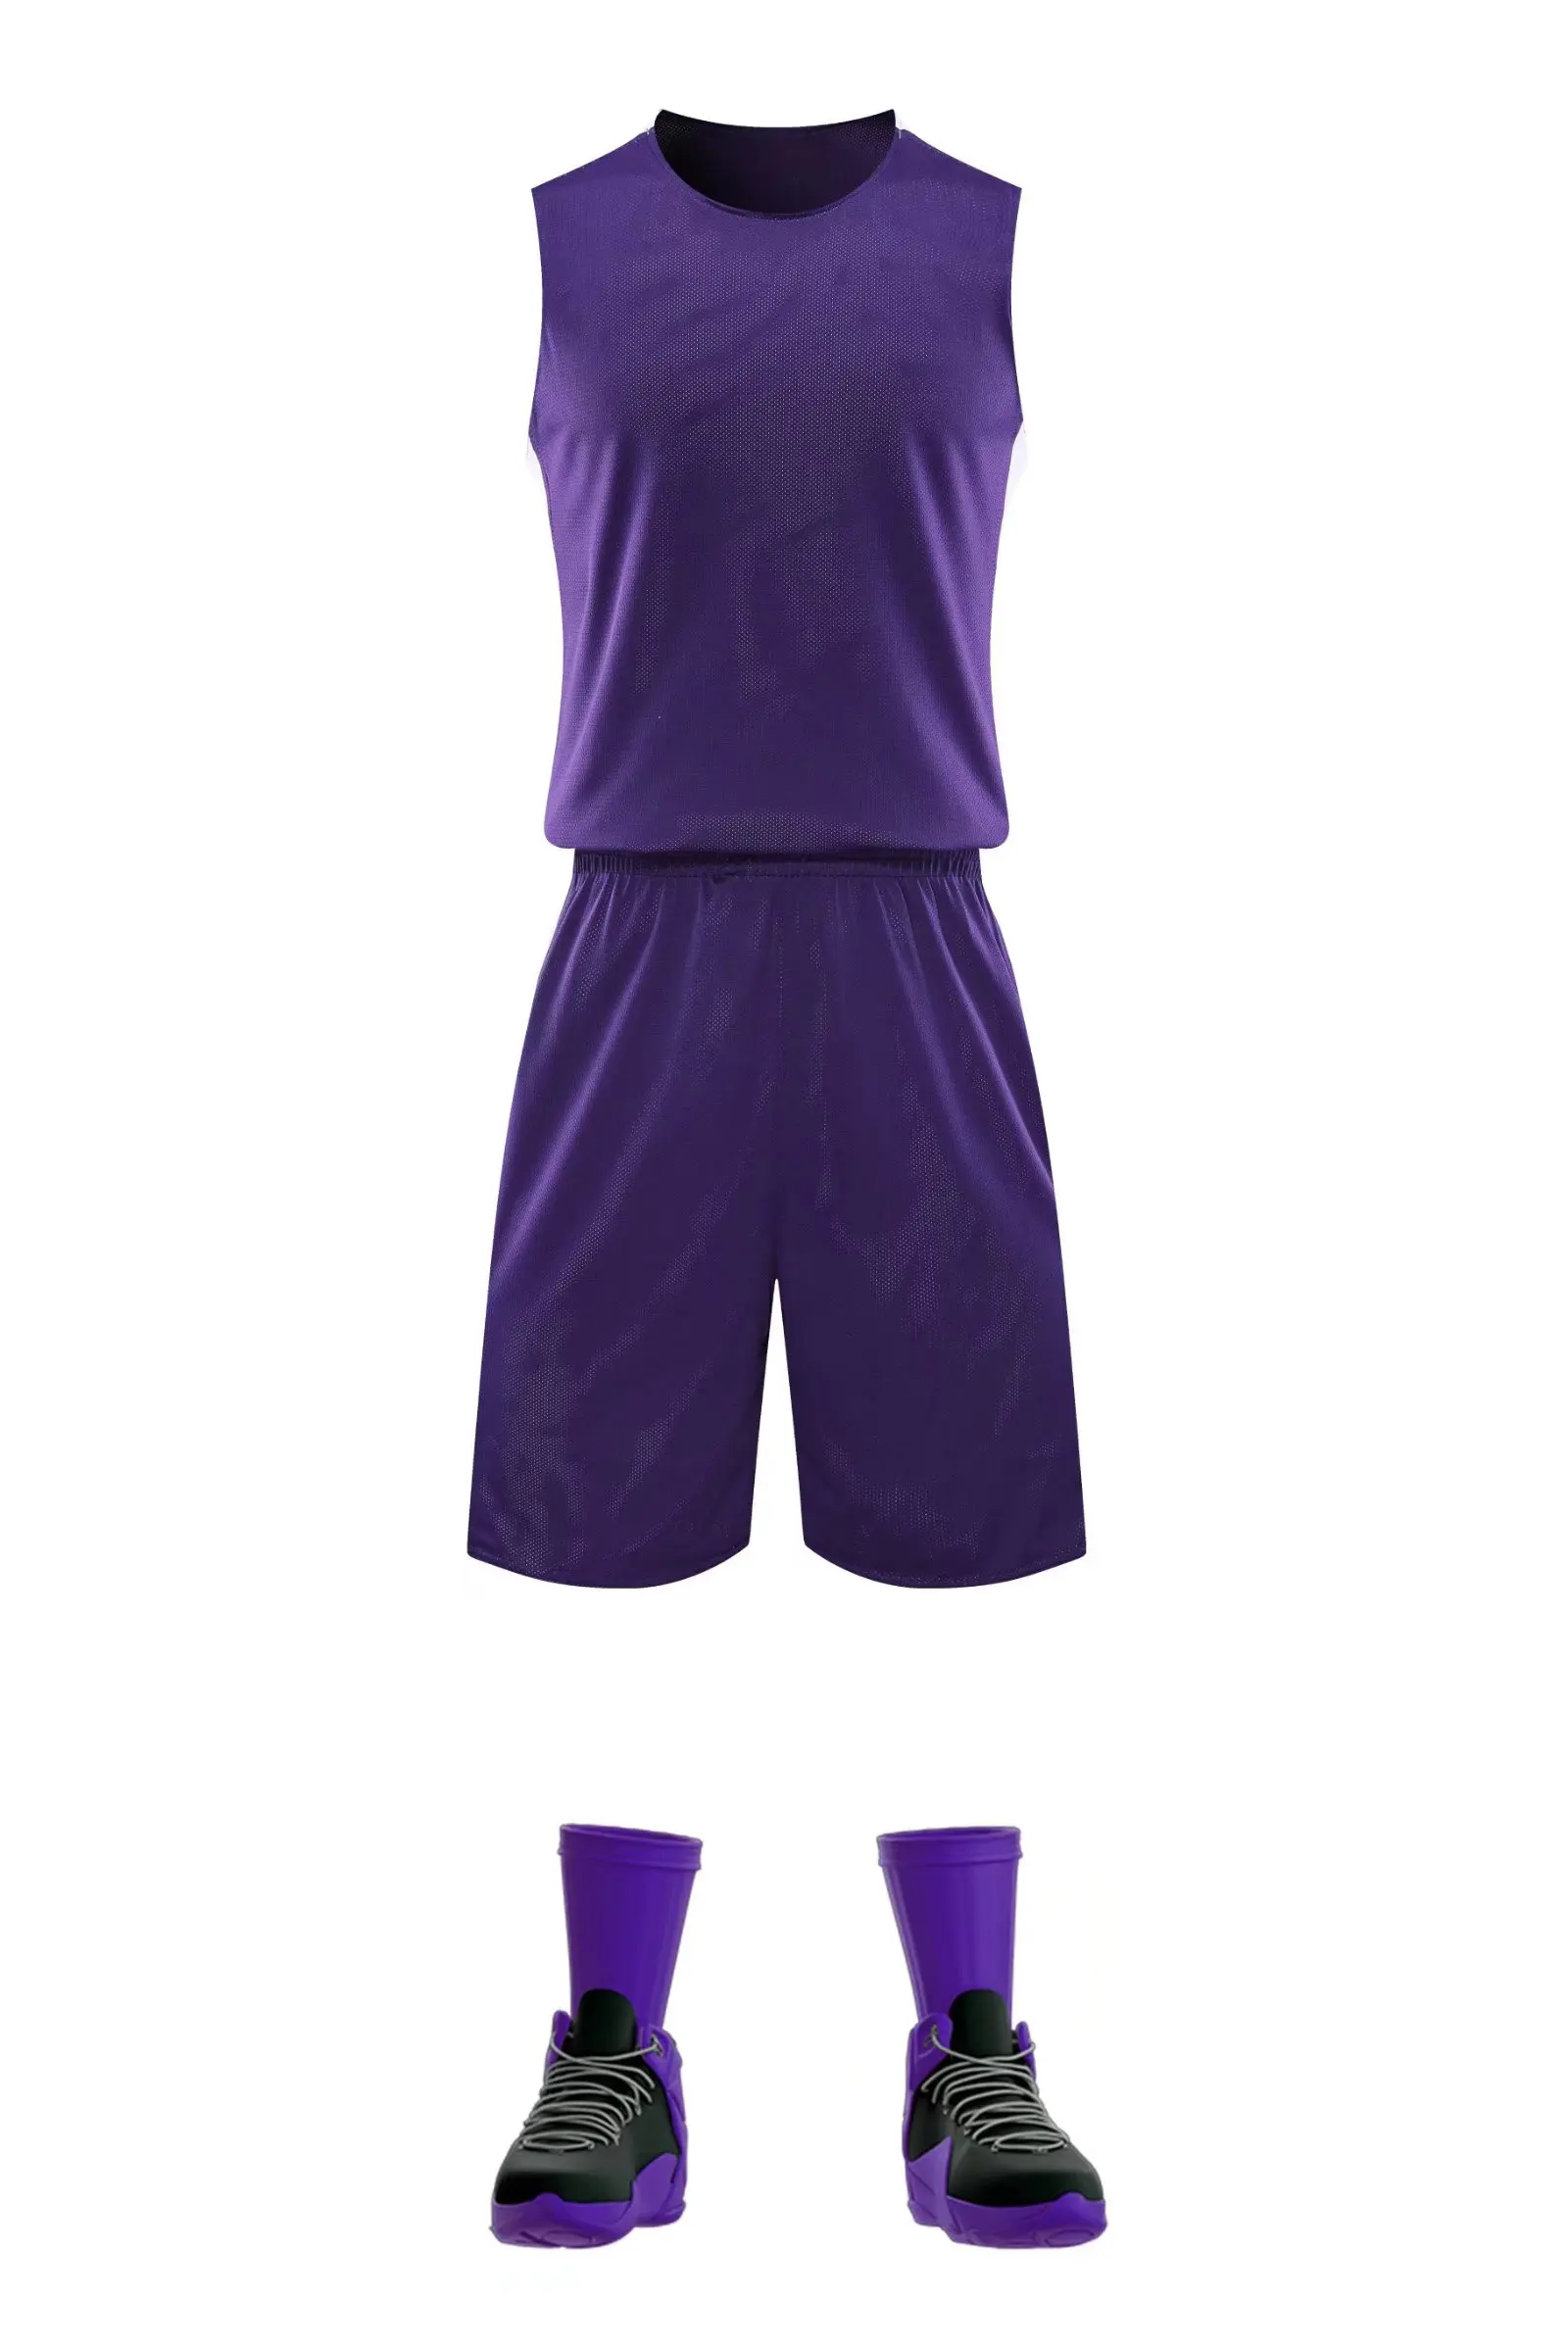 

Комплект спортивной одежды, комплект одежды, двусторонняя баскетбольная майка с коротким рукавом фиолетового и белого цветов